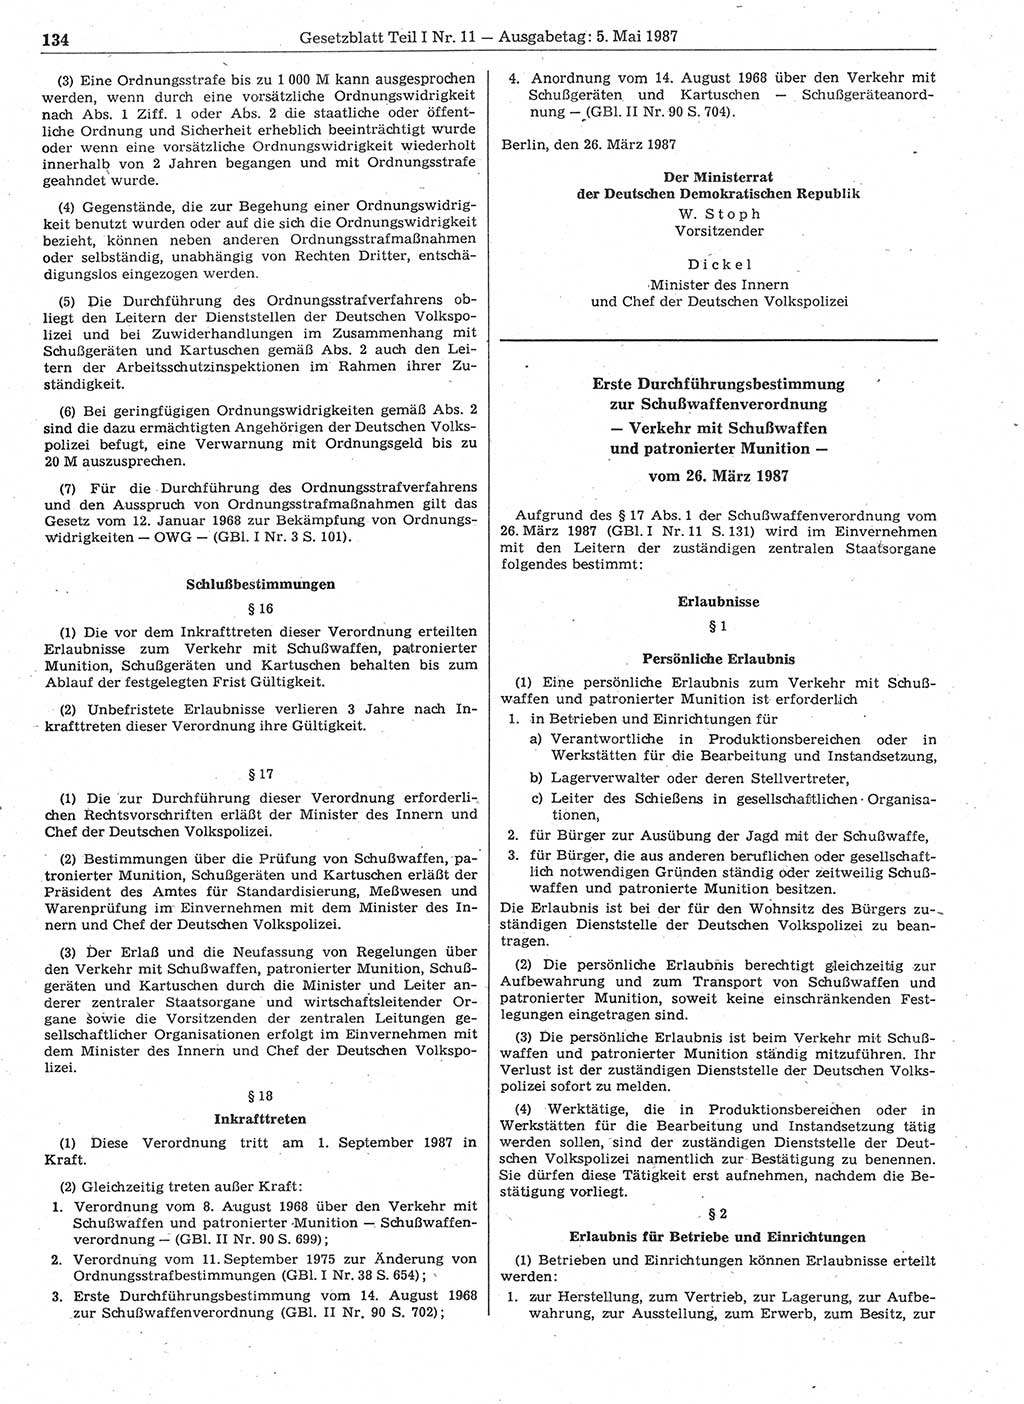 Gesetzblatt (GBl.) der Deutschen Demokratischen Republik (DDR) Teil Ⅰ 1987, Seite 134 (GBl. DDR Ⅰ 1987, S. 134)